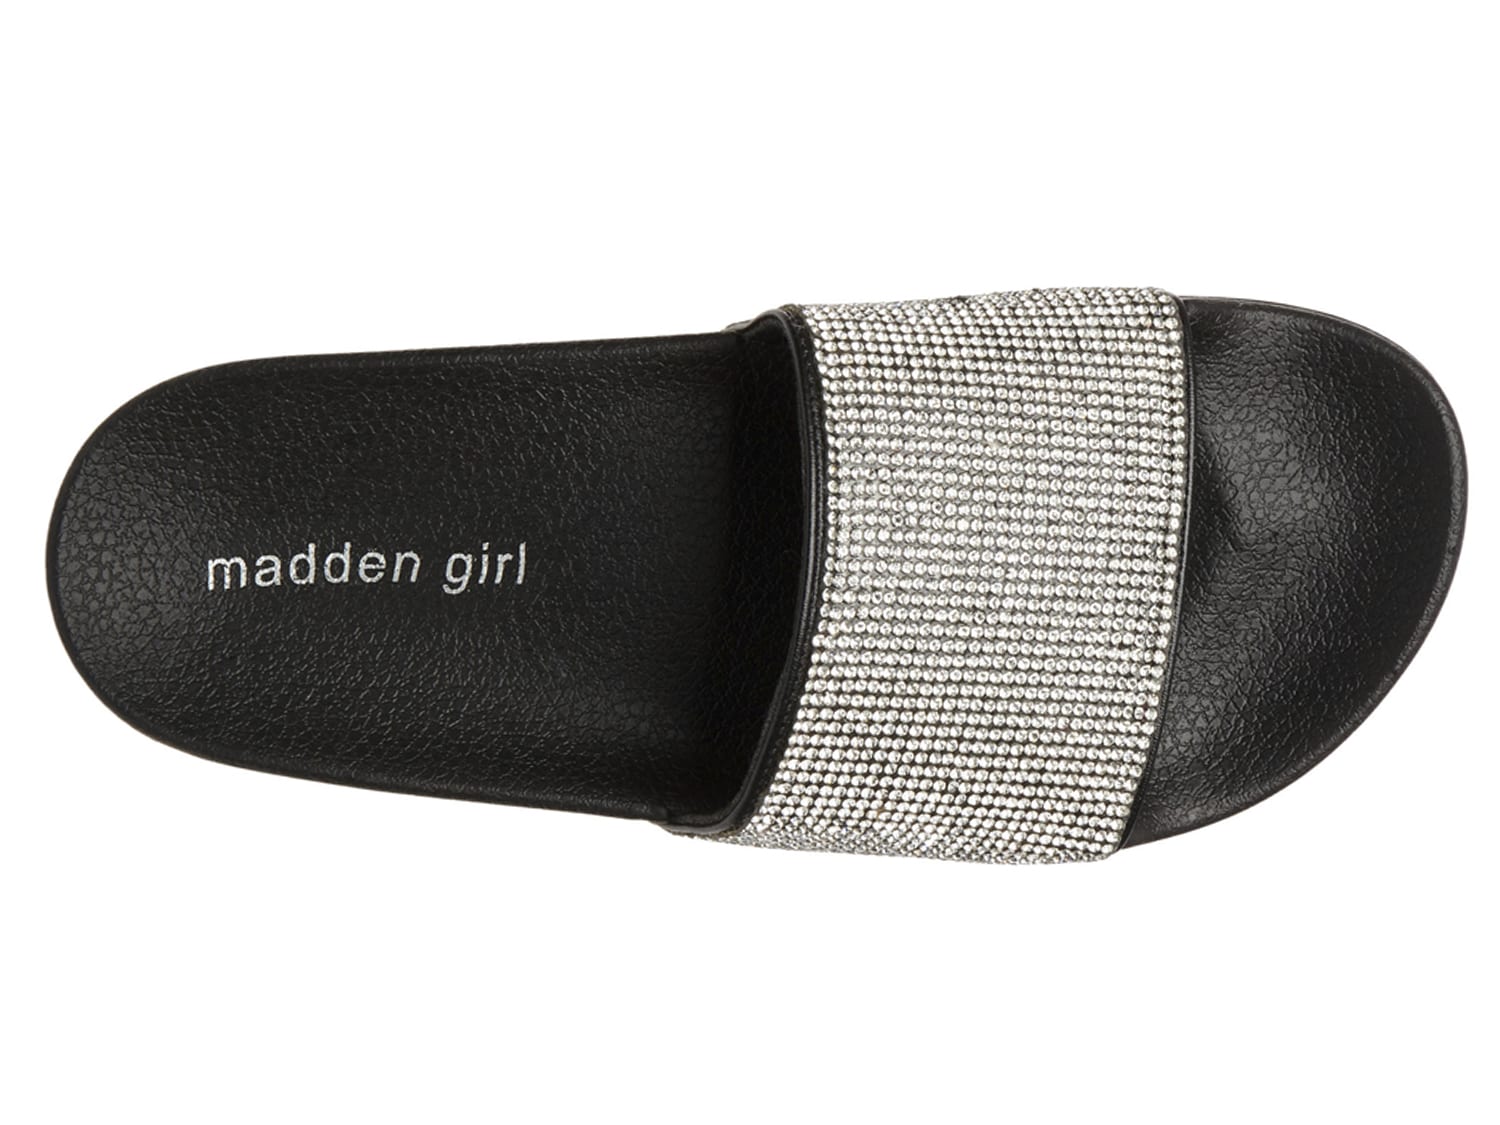 madden girl fancy slides